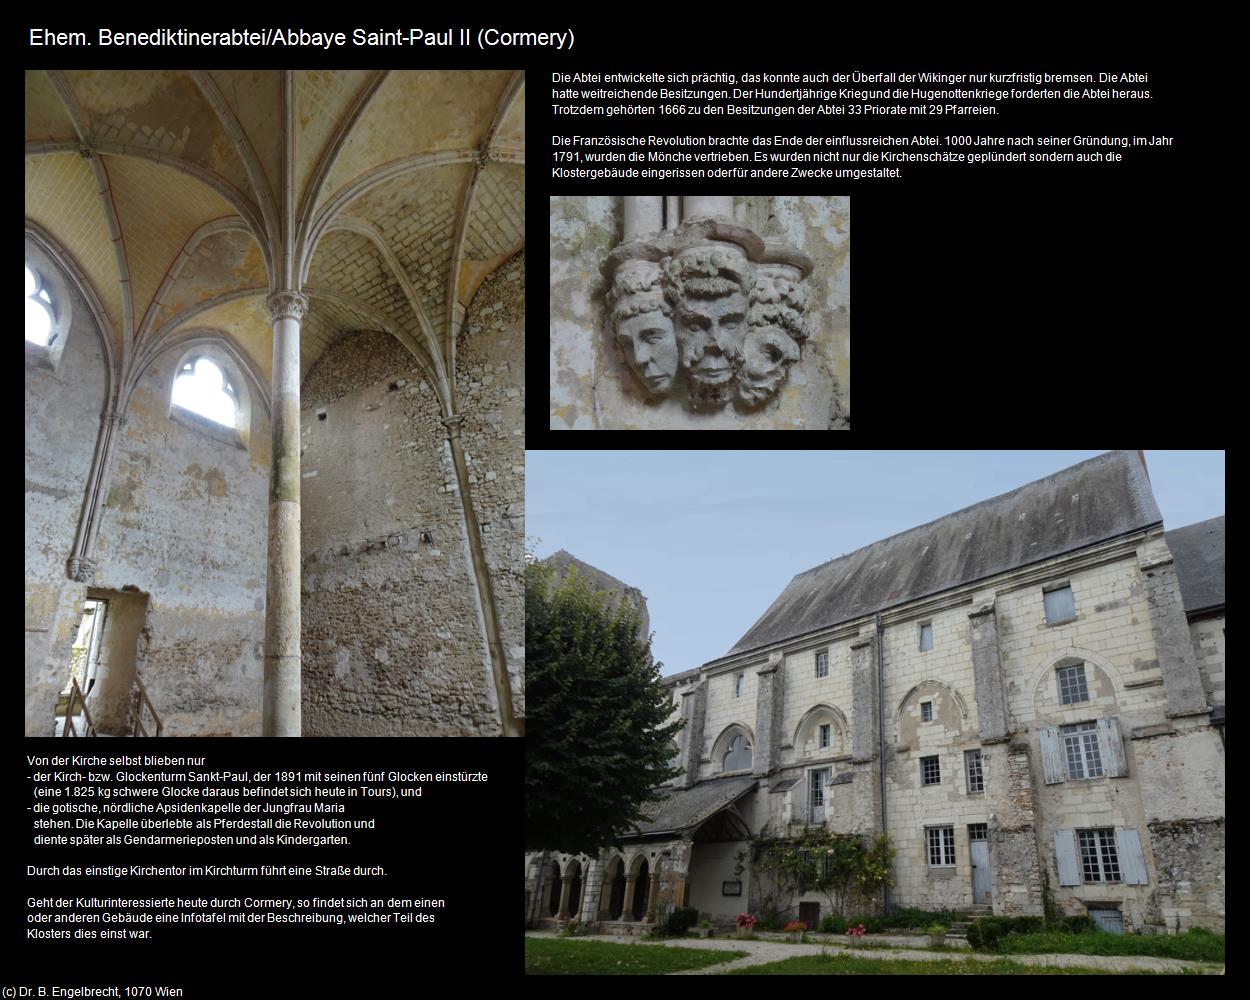 Abbaye Saint-Paul II (Cormery (FR-CVL)) in Kulturatlas-FRANKREICH